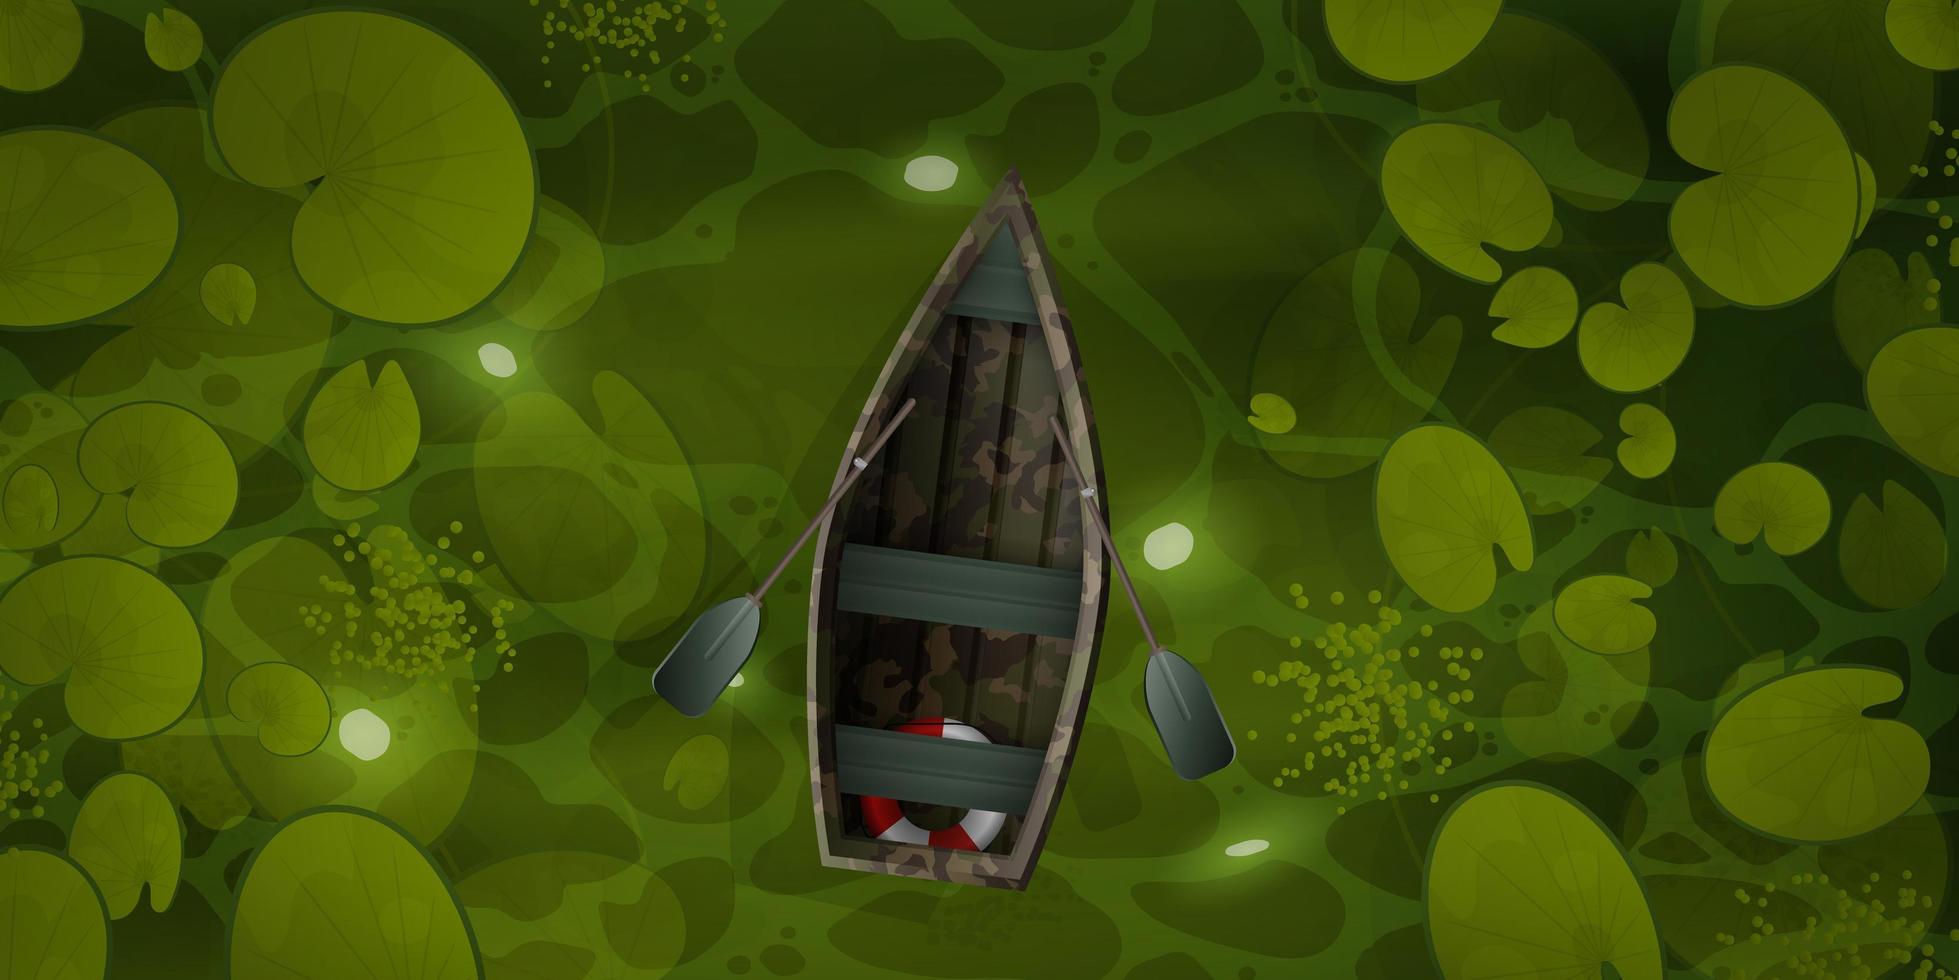 barco de camuflagem flutua pelo pântano com folhas de nenúfar, vista superior. paisagem de um rio verde ou superfície ocre com plantas aquáticas. estilo de desenho vetorial vetor